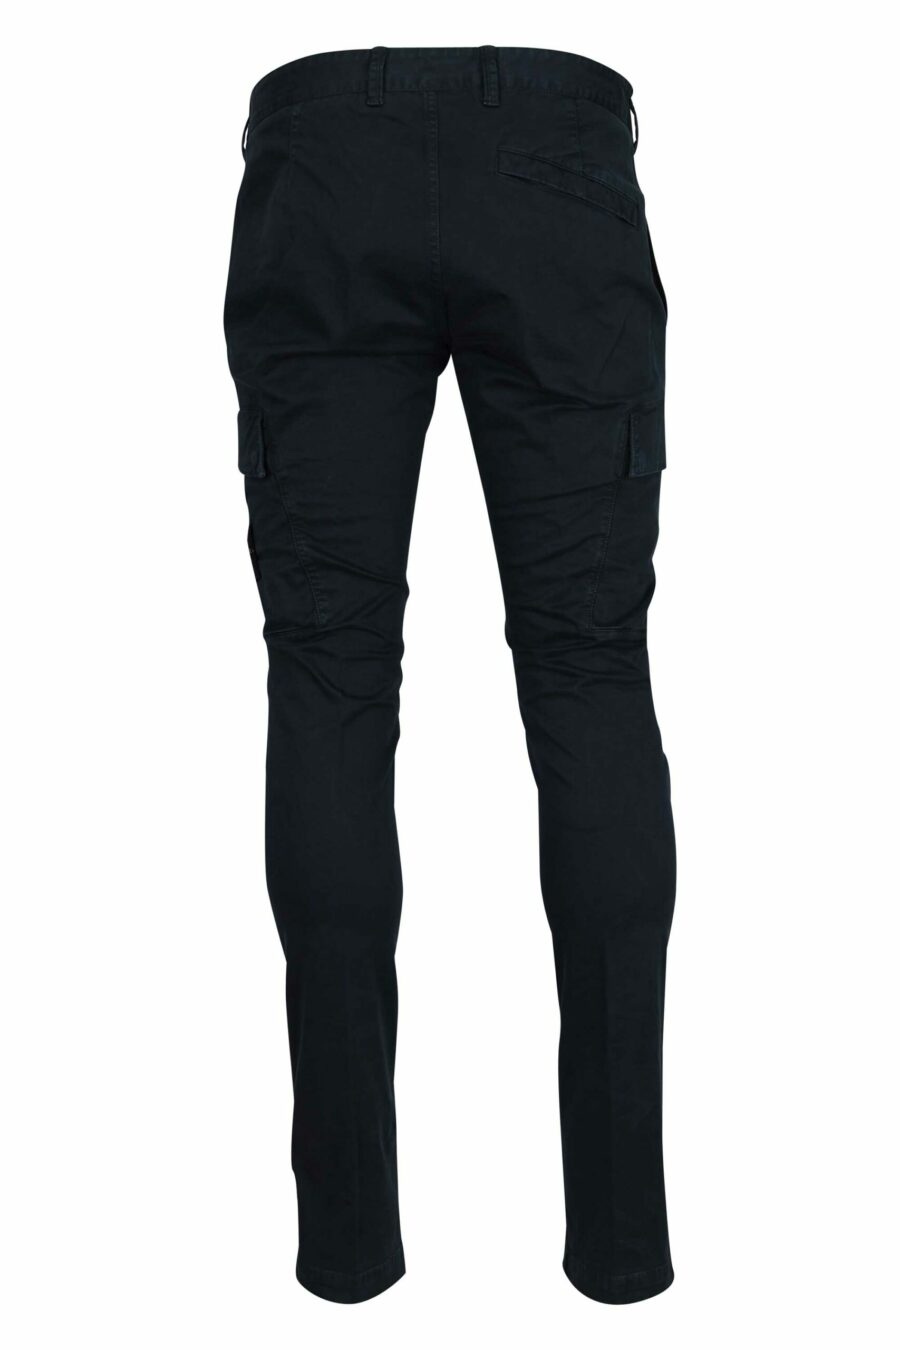 Pantalón azul oscuro "skinny" estilo cargo con logo parche brújula - 8052572938856 1 scaled